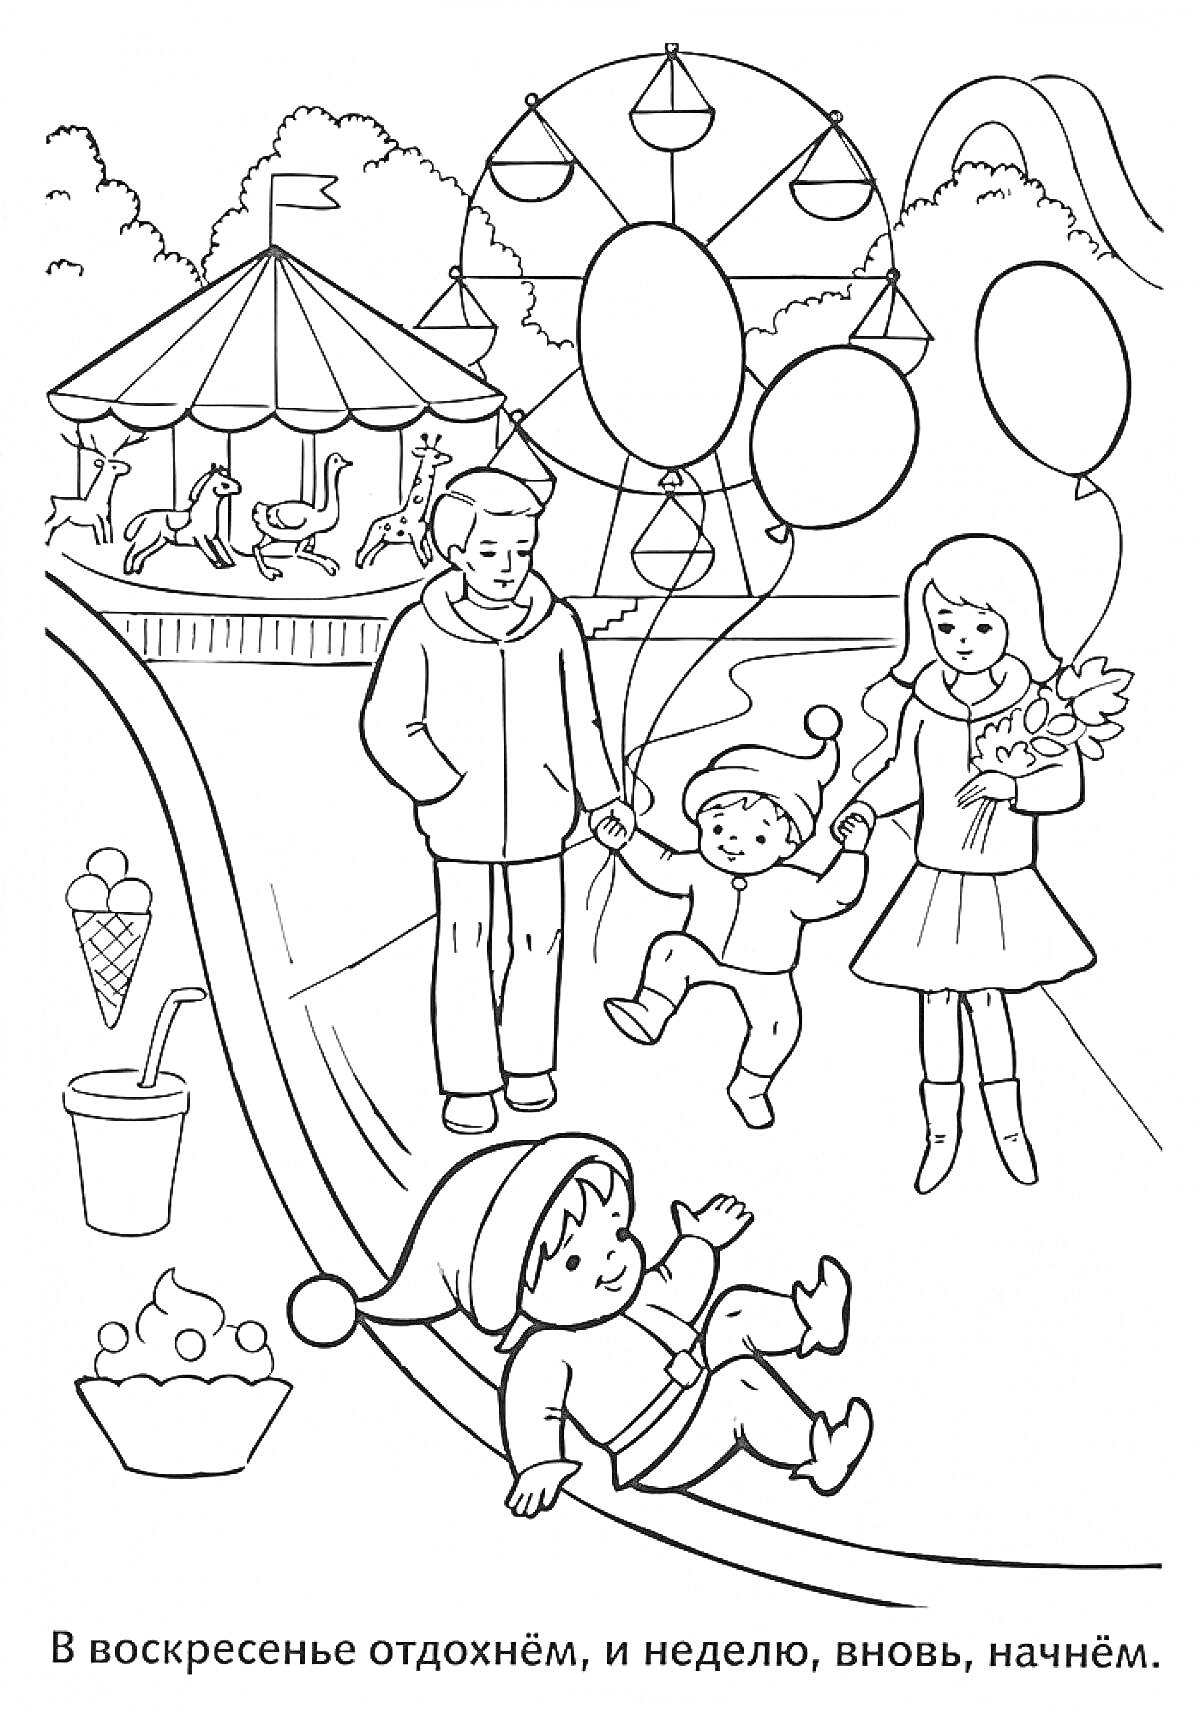 Раскраска Семейное воскресенье в парке с аттракционами, мороженым и воздушными шарами